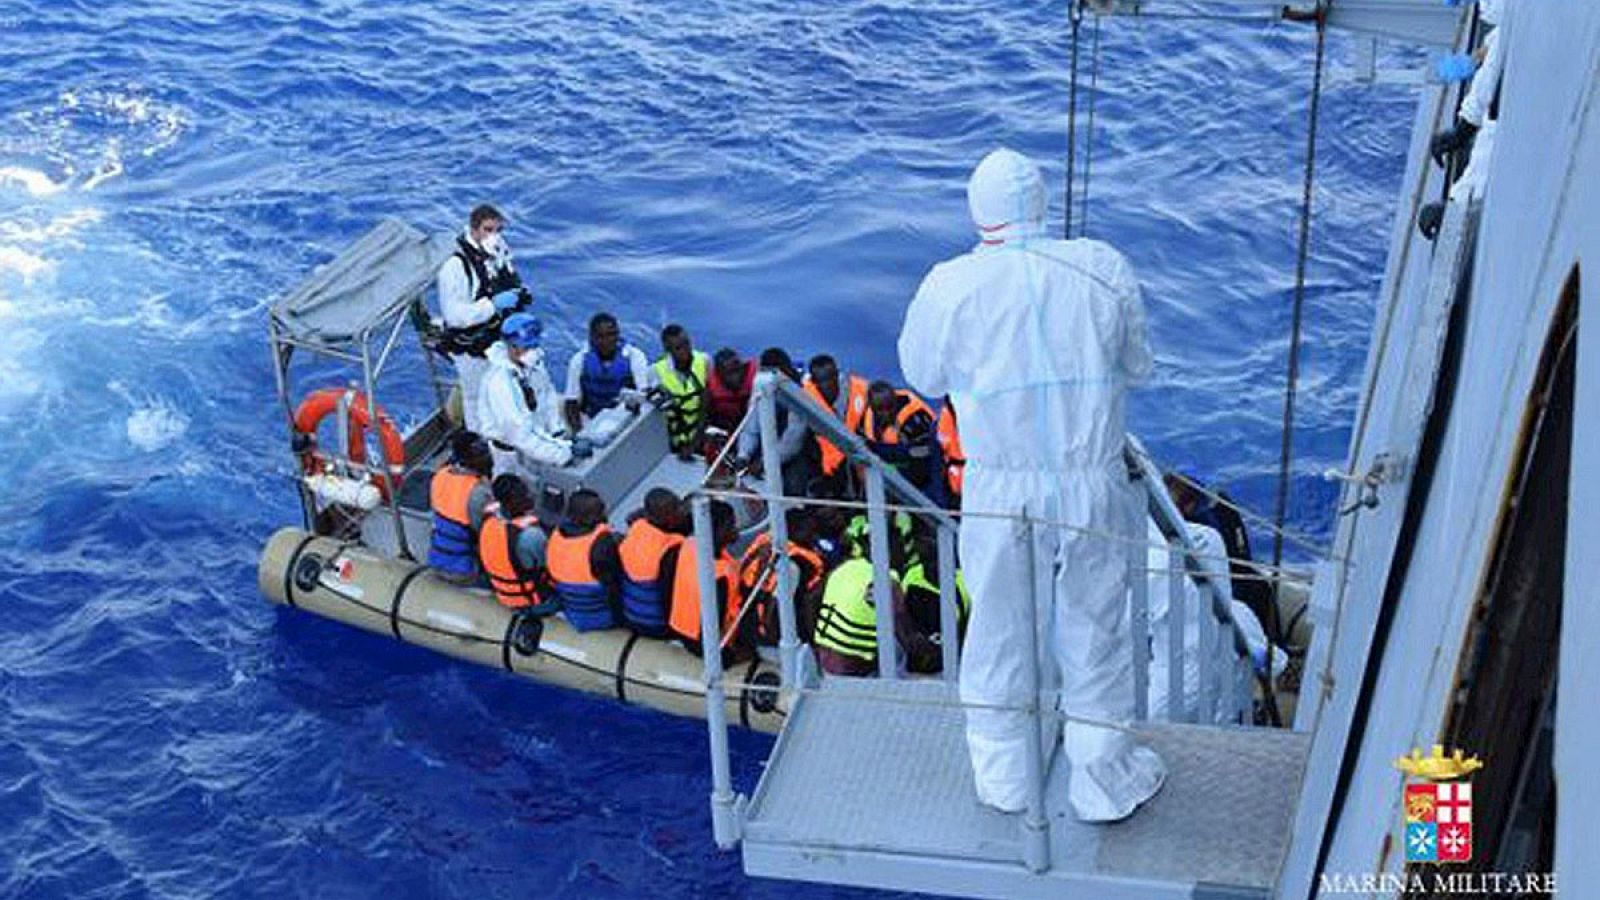 Fotografía facilitada por la Marina Italiana que muestra a migrantes suiendo a bordo del Cigala Fulgosi durante su rescate en alta mar en el Mediterráneo cerca de la costa de Libia el 1 de agosto de 2015